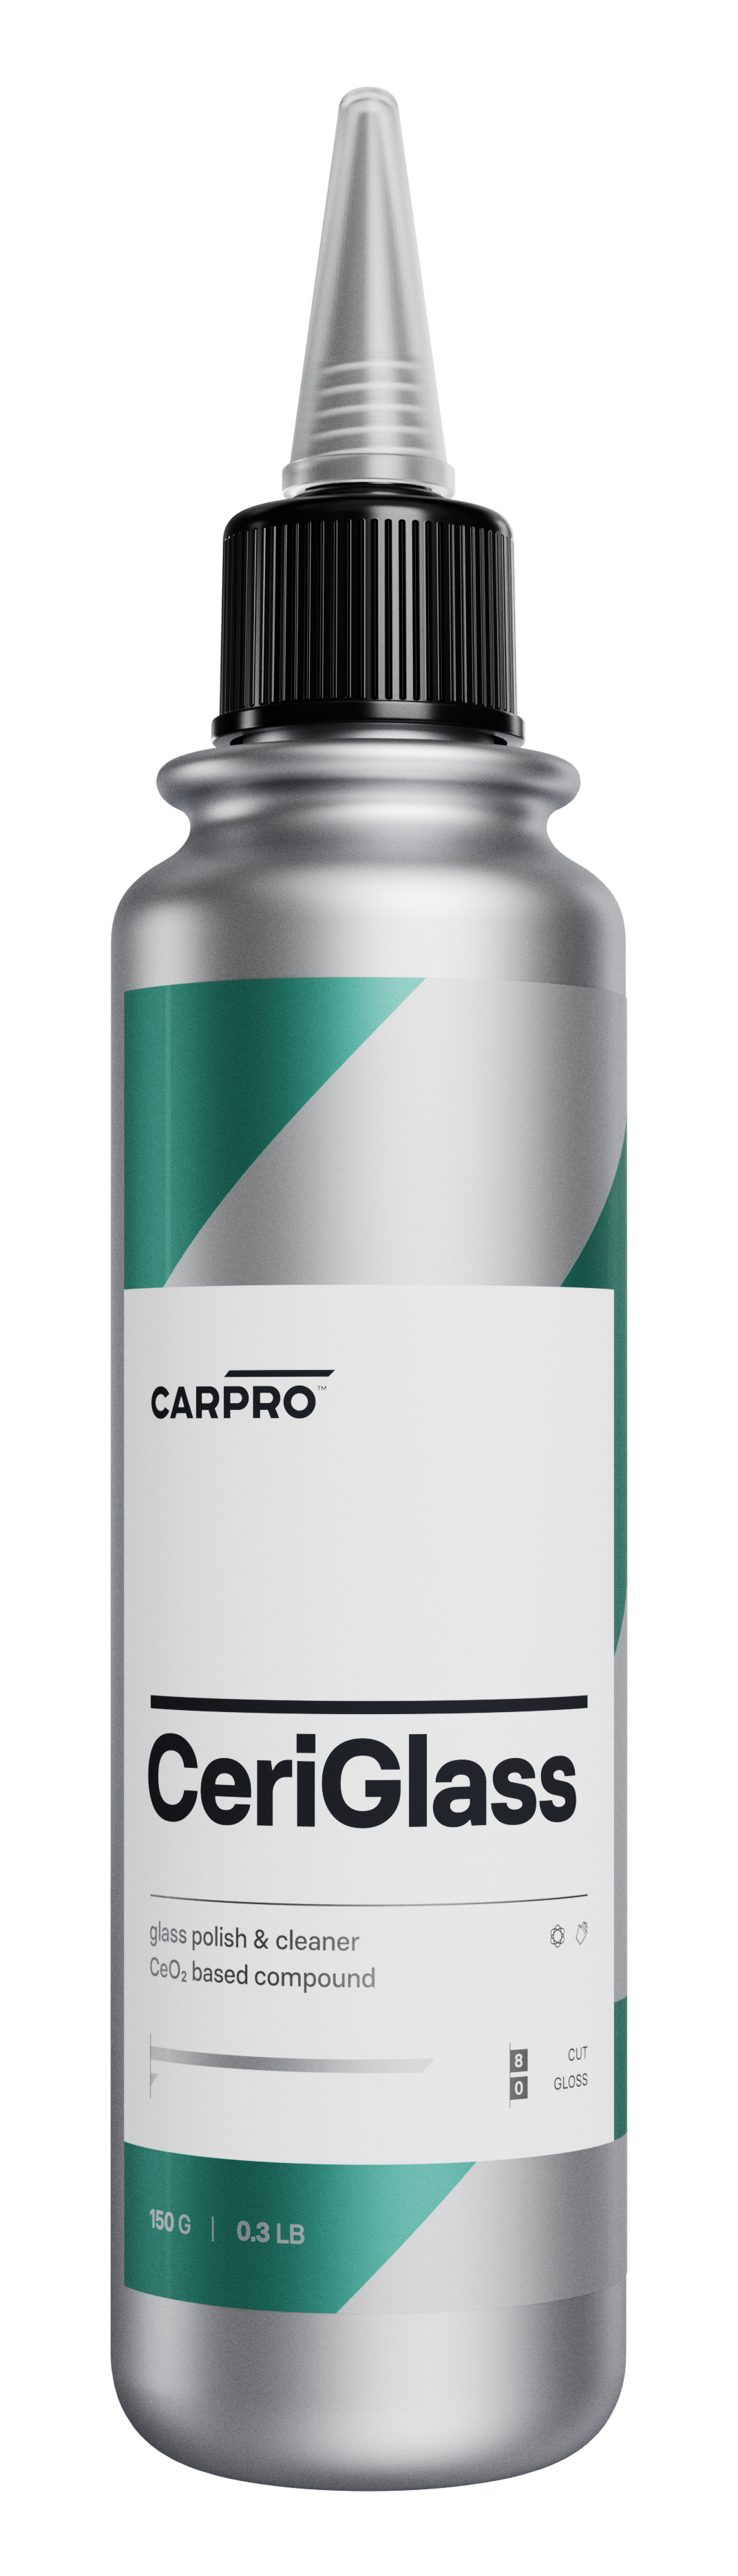 CARPRO CeriGlass - Poli pour verre